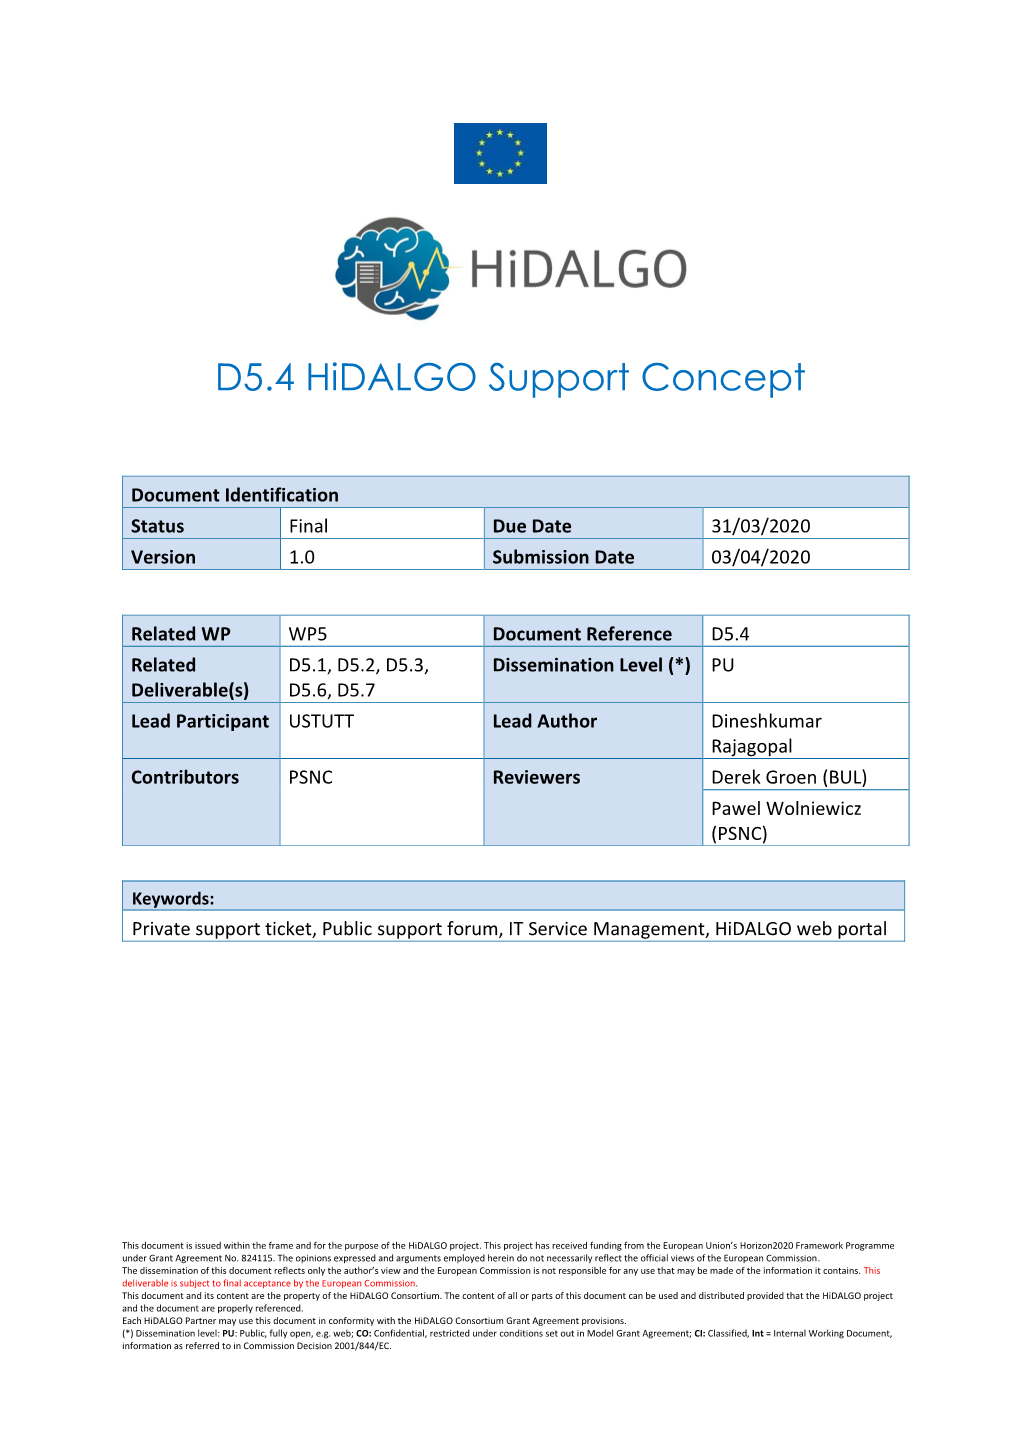 D5.4 Hidalgo Support Concept